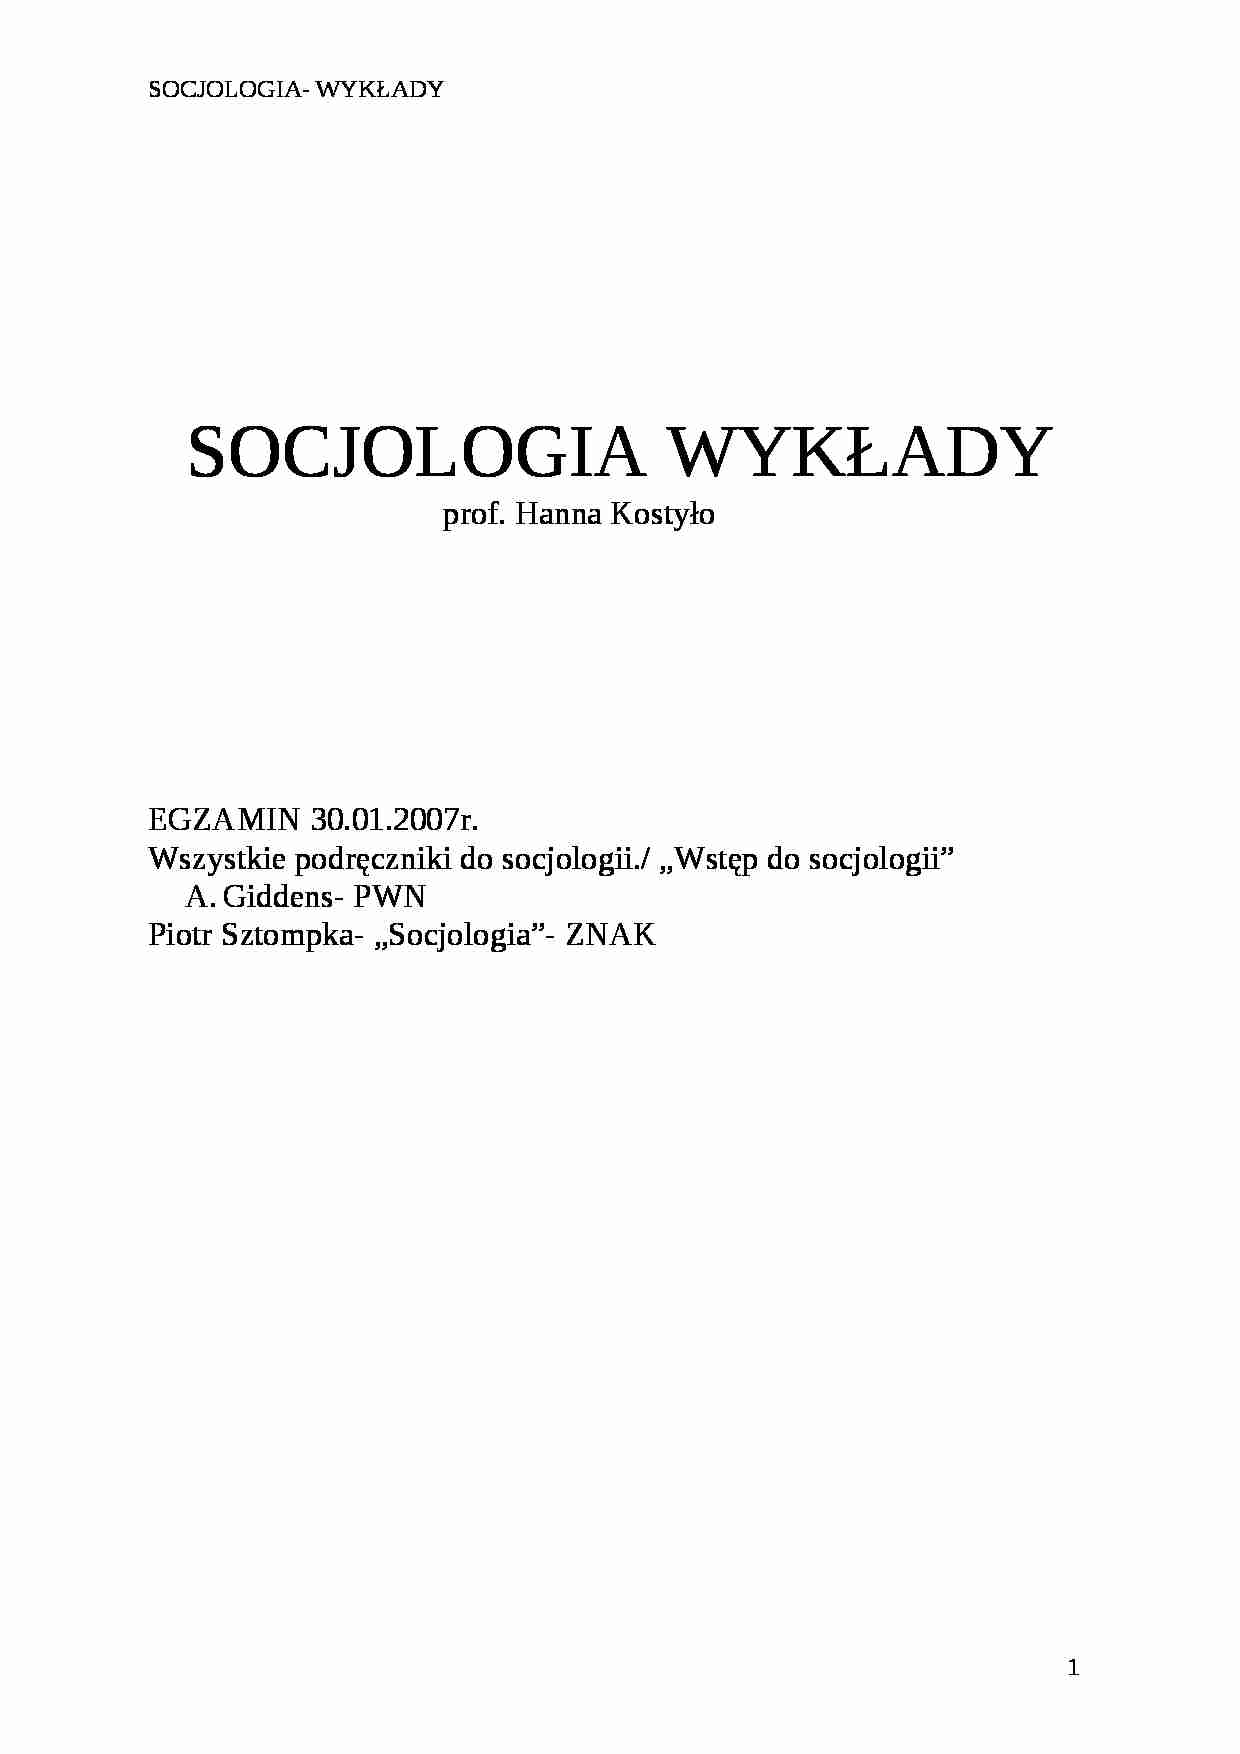 Socjologia - historia i przedstawiciele - Społeczeństwo kapitalistyczne a tradycyjne - strona 1